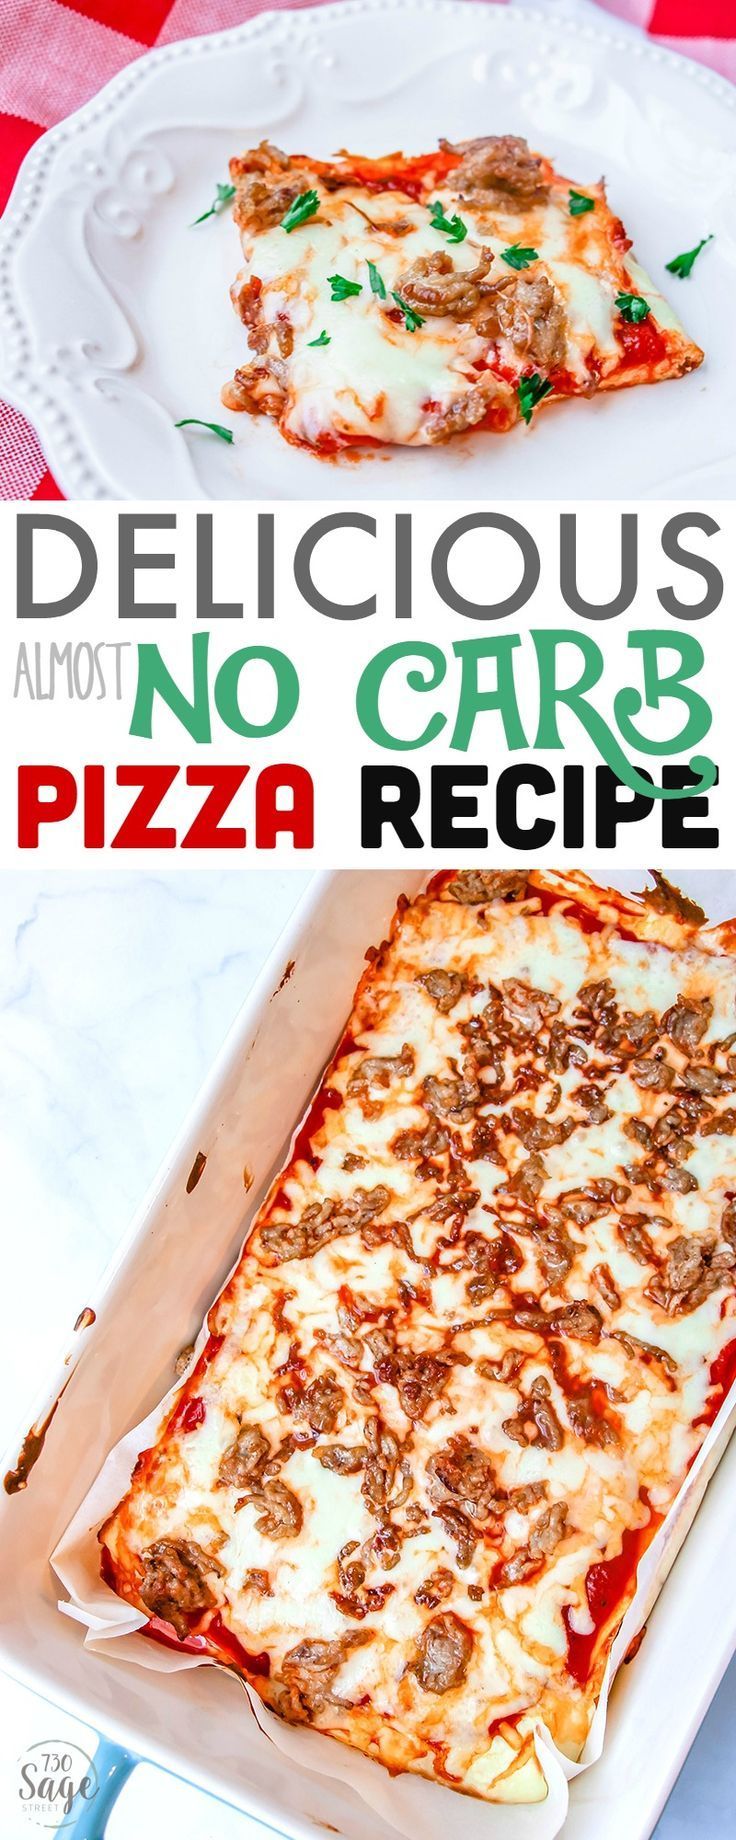 24 no carb diet meals
 ideas